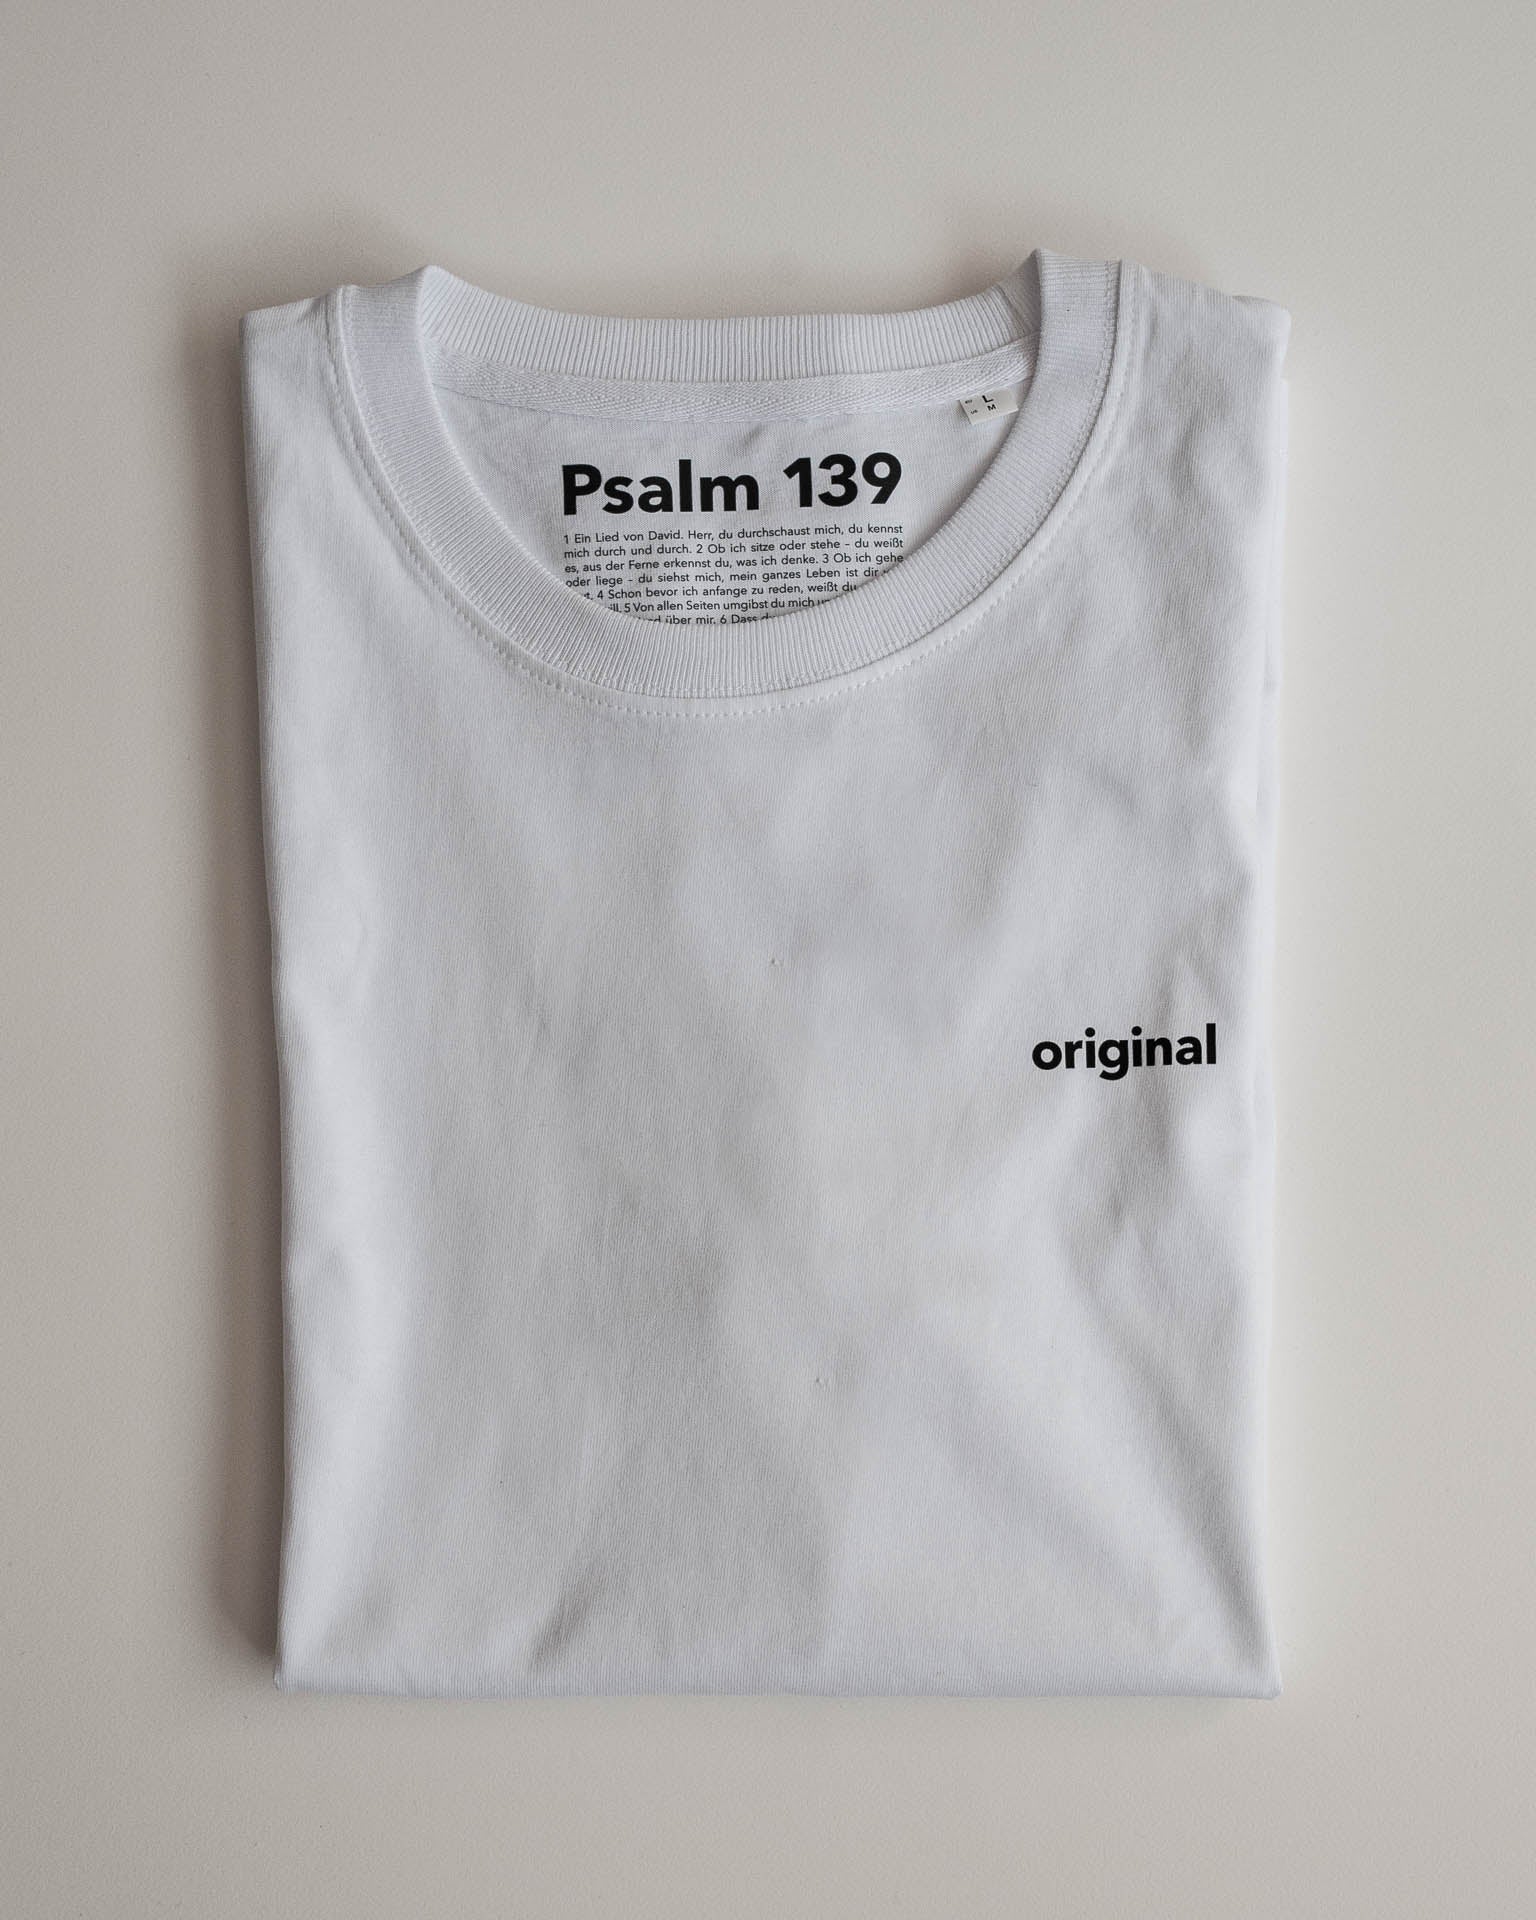 original / Tshirt / Psalm 139